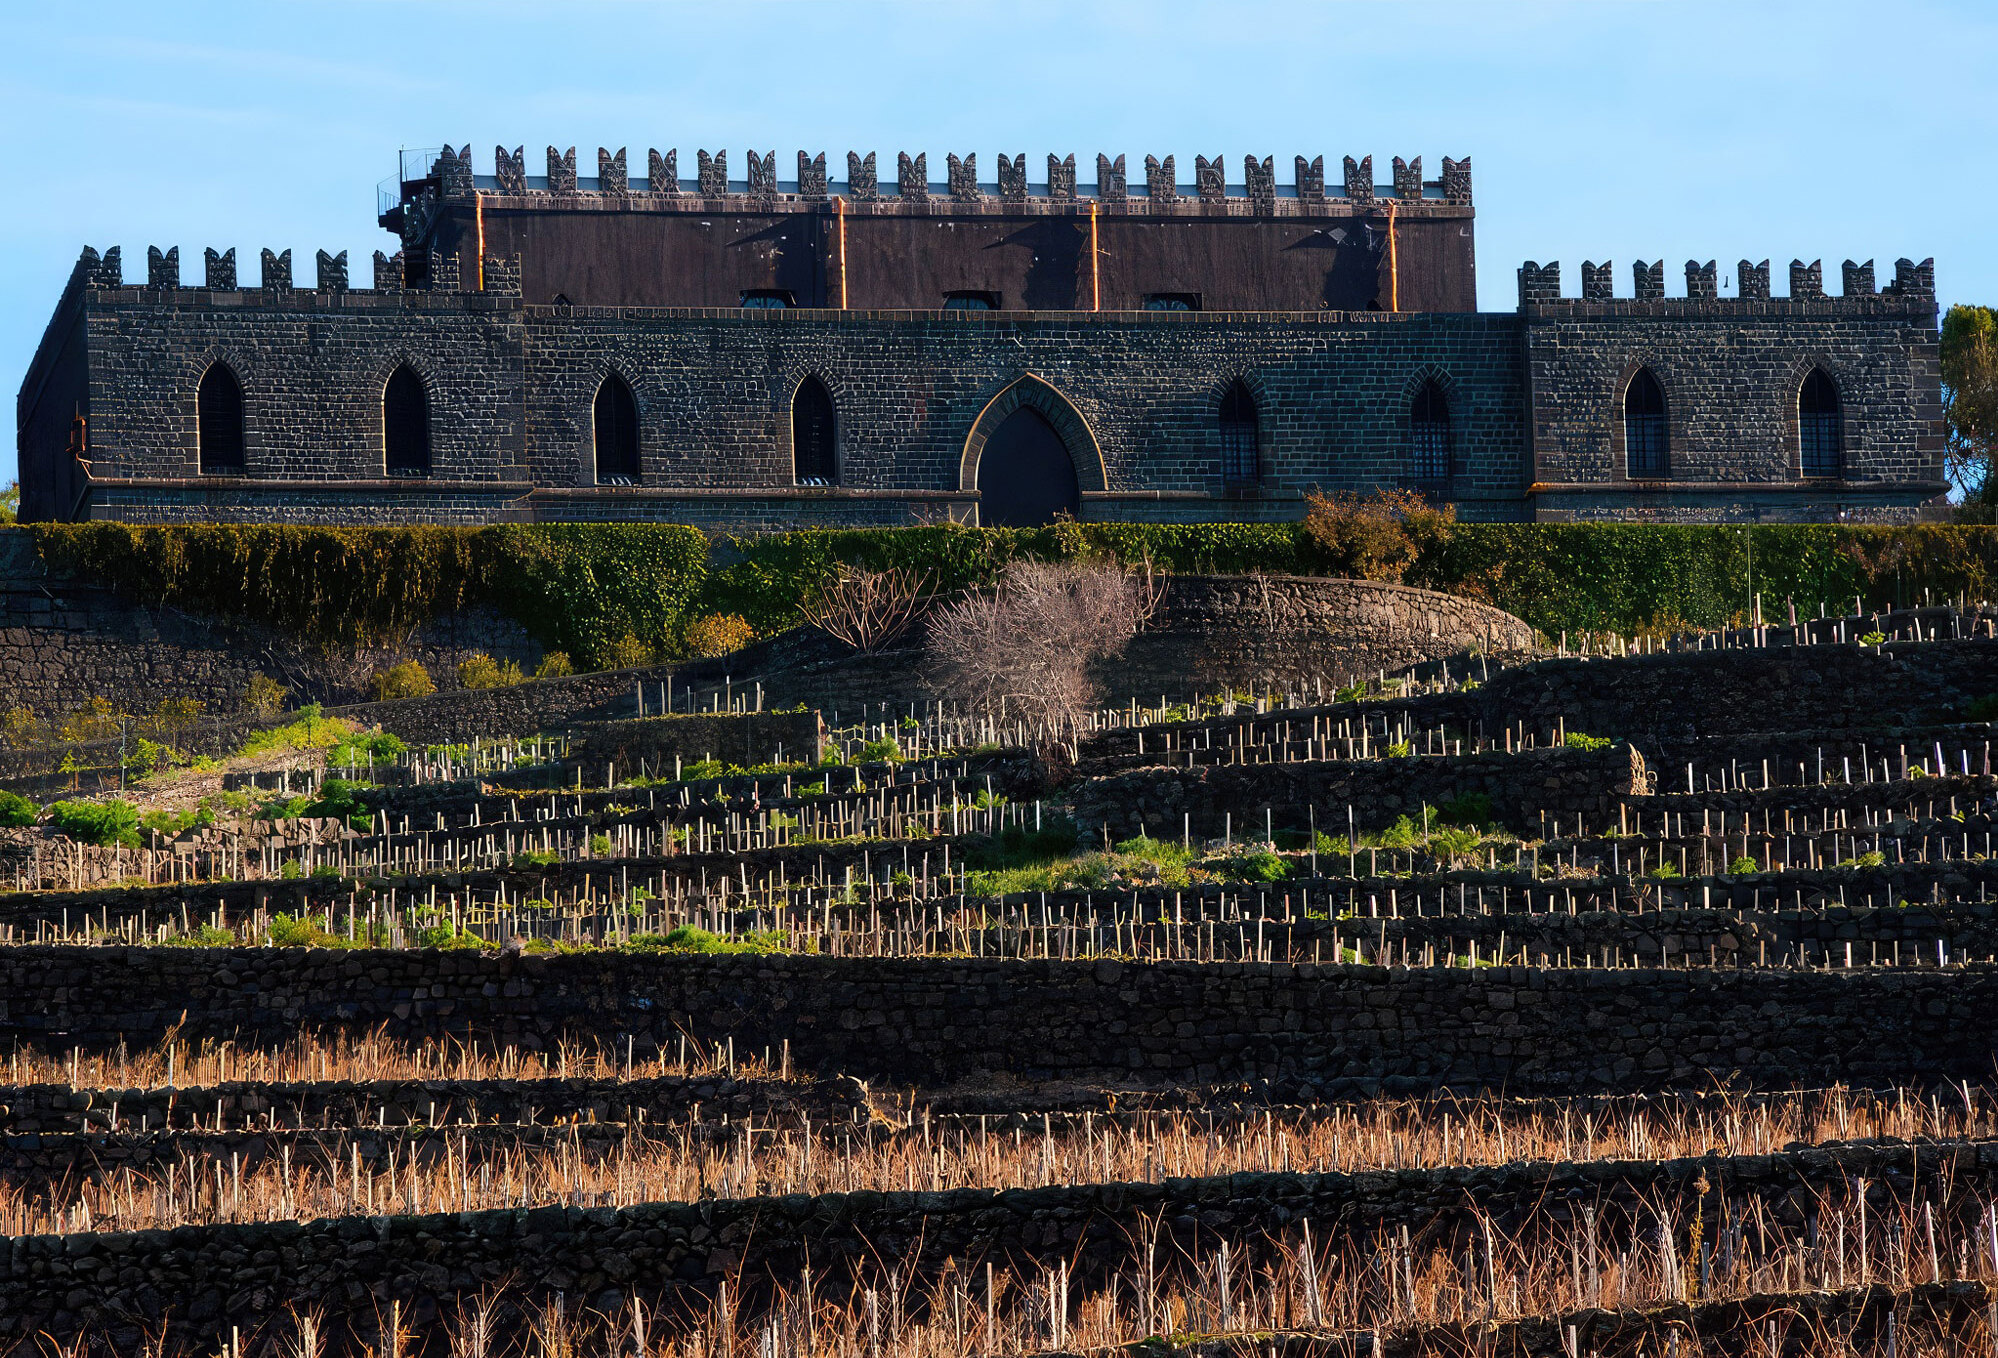 Sicilian castle on hilltop in front of terraced fields